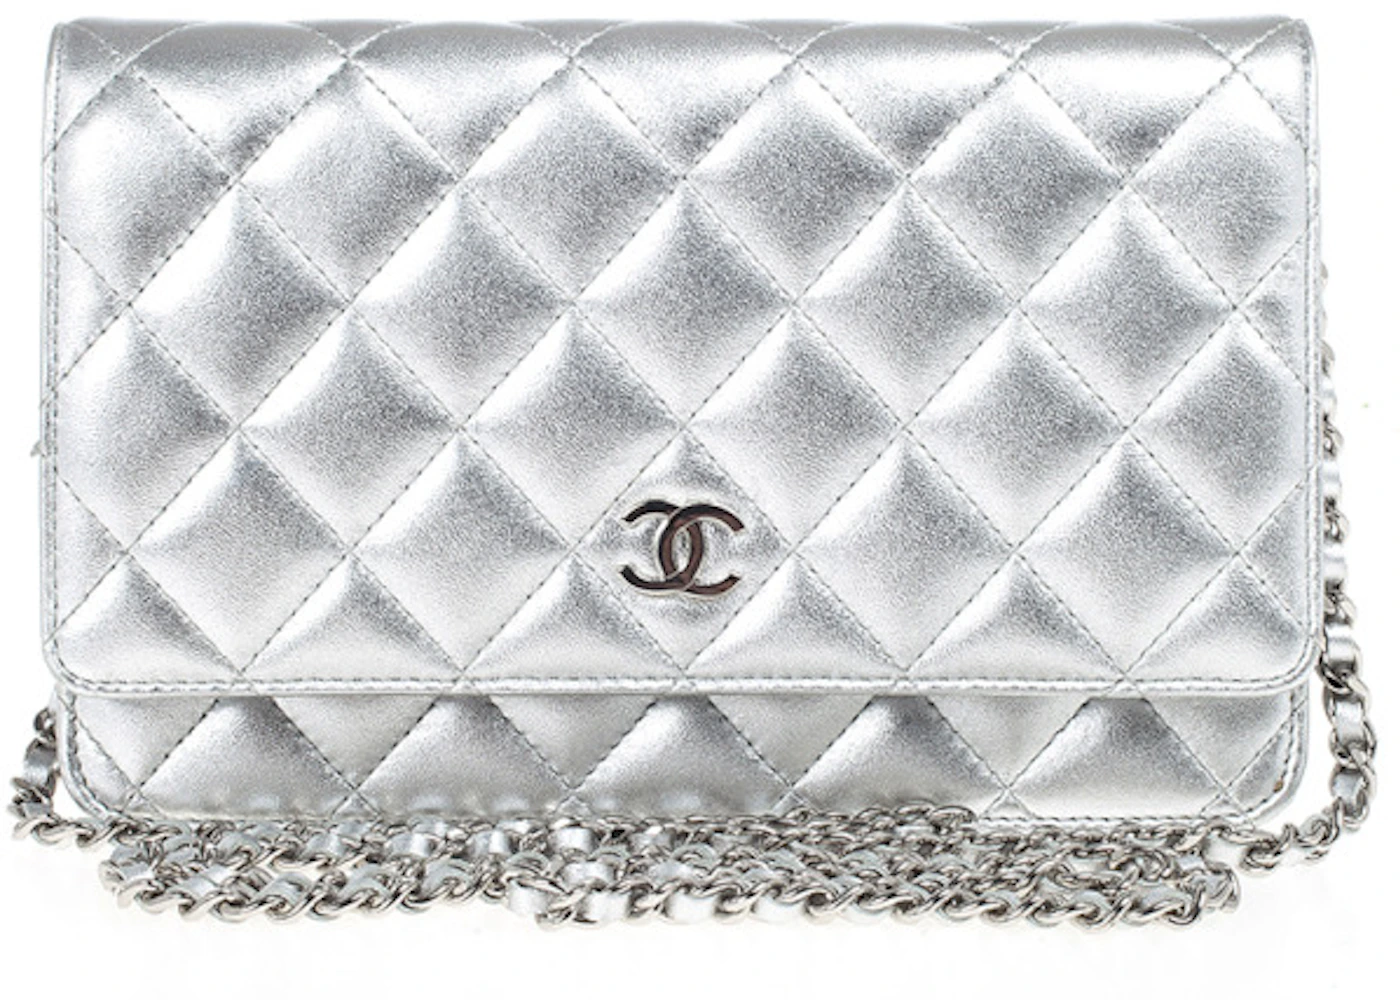 women's chanel wallet on chain